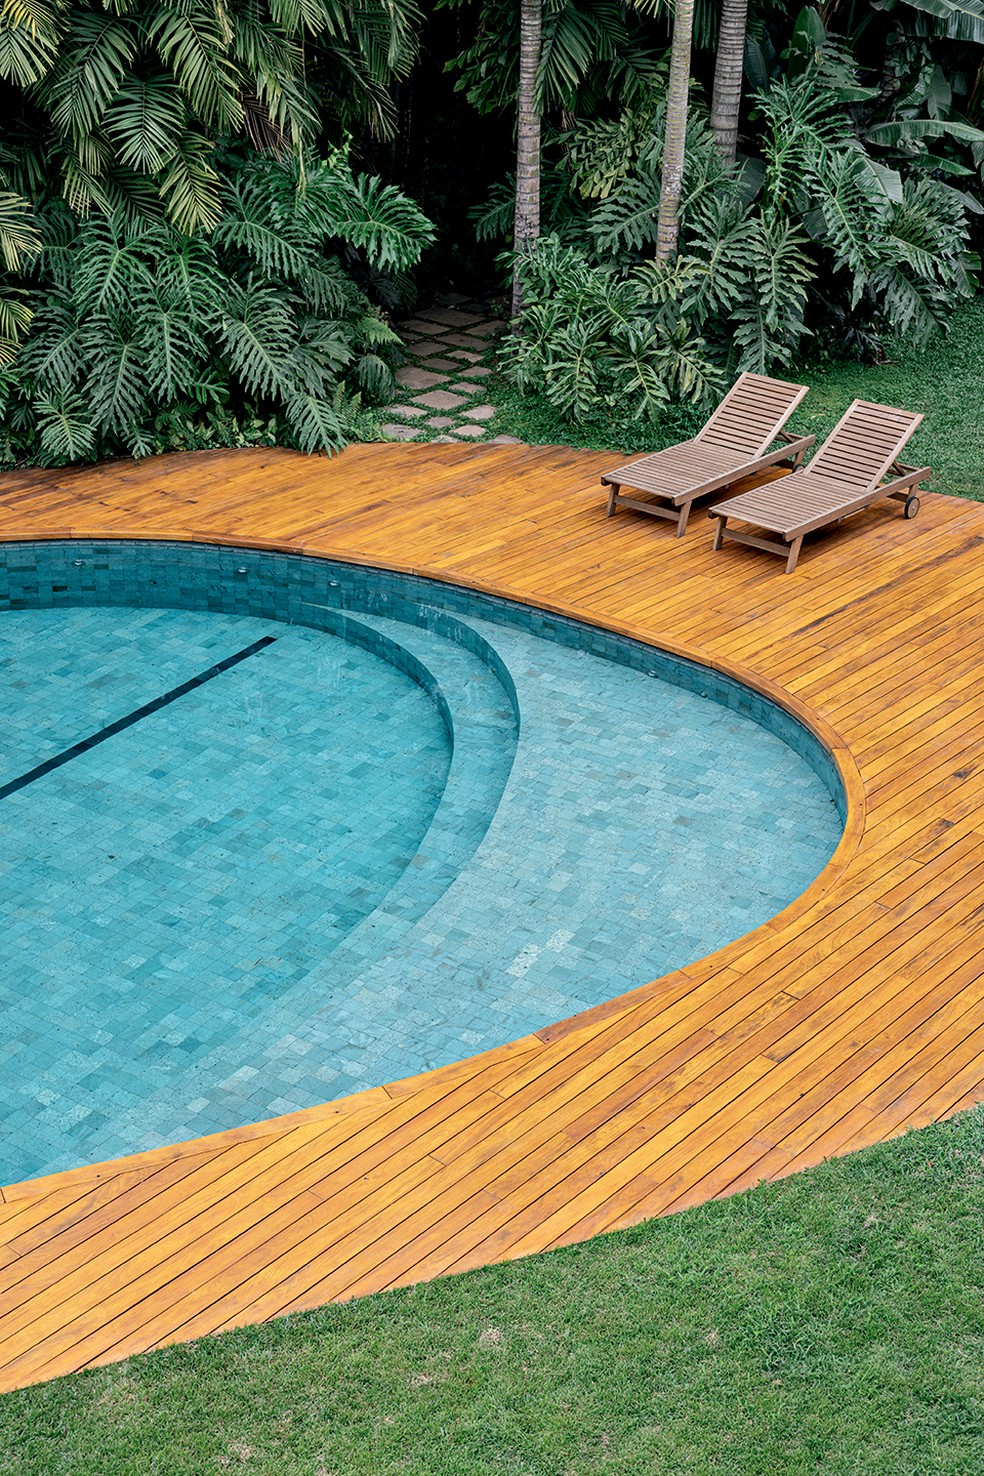 A piscina de formas sinuosas arrematada por um deque de madeira é o ponto alto do jardim, contrabalanceando as linhas retas predominantes na arquitetura — Foto: Fran Parente